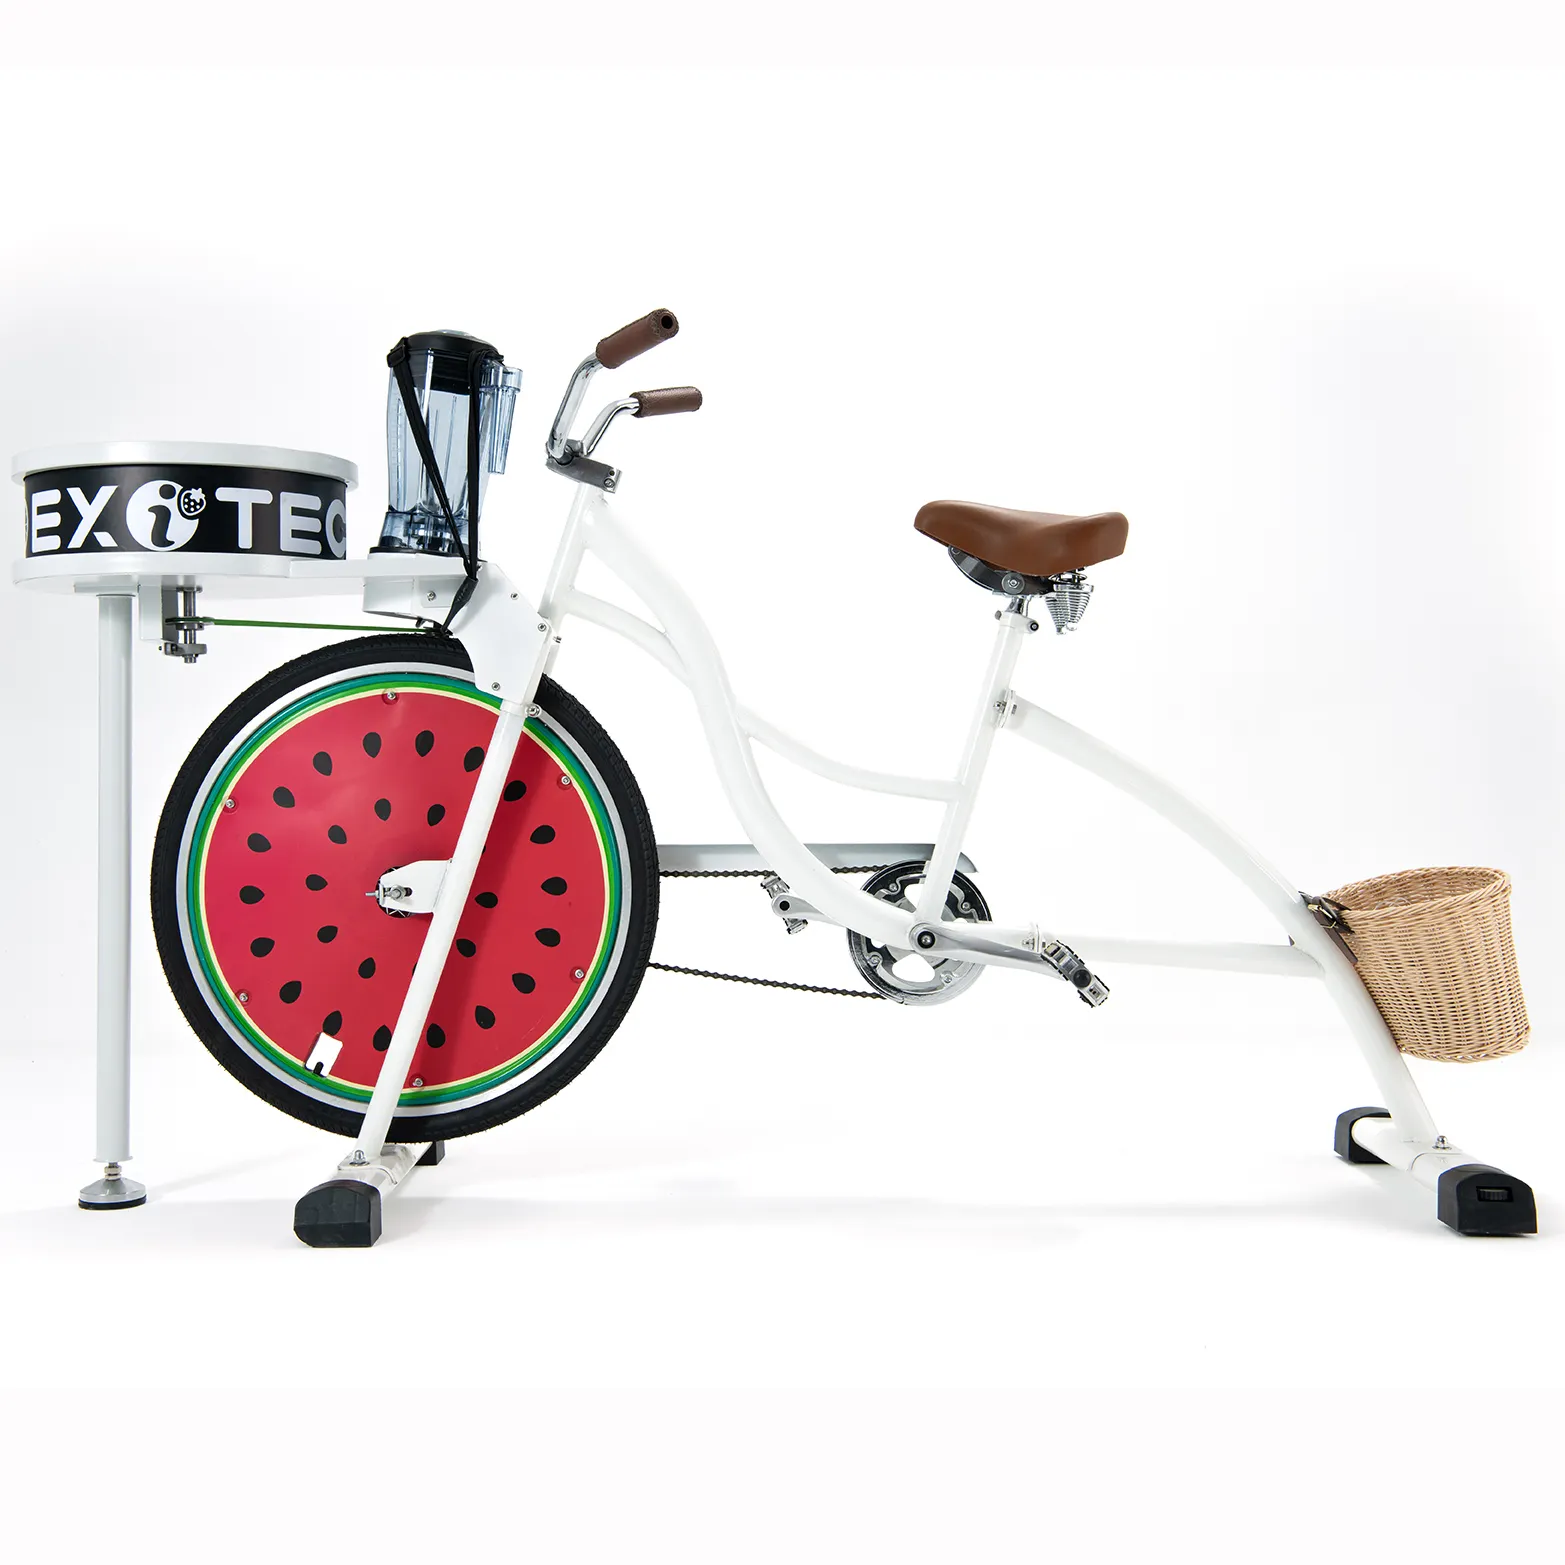 Exi 2024 최신 자전거 광고 스타일 블렌더 과즙 짜는기구 및 스핀 아트 다기능 자전거